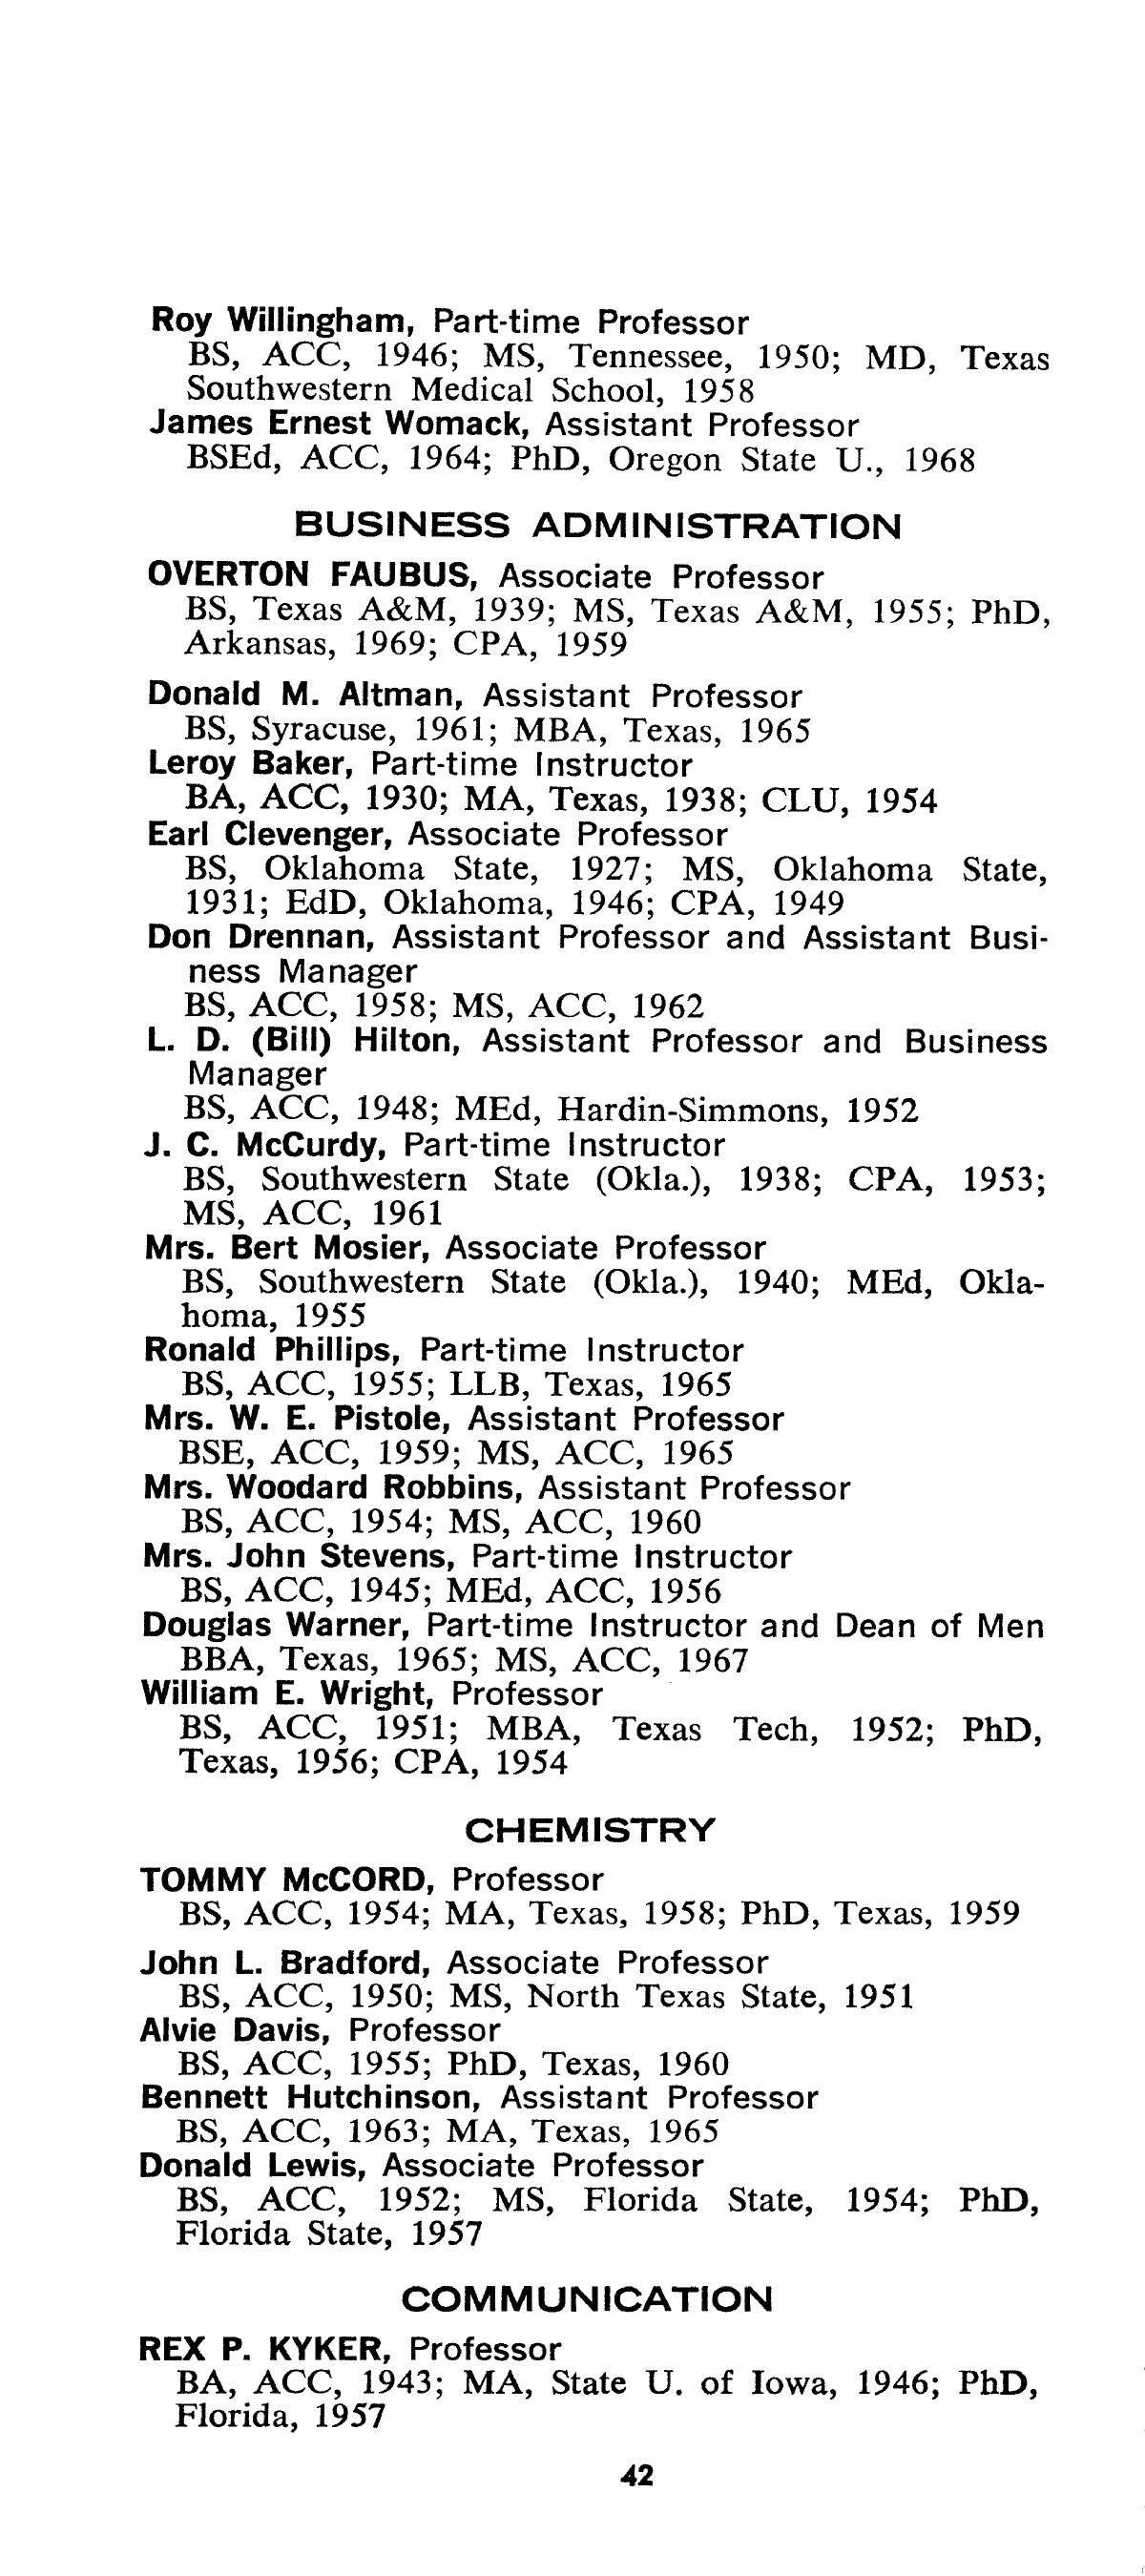 Catalog of Abilene Christian College, 1969-1970
                                                
                                                    42
                                                